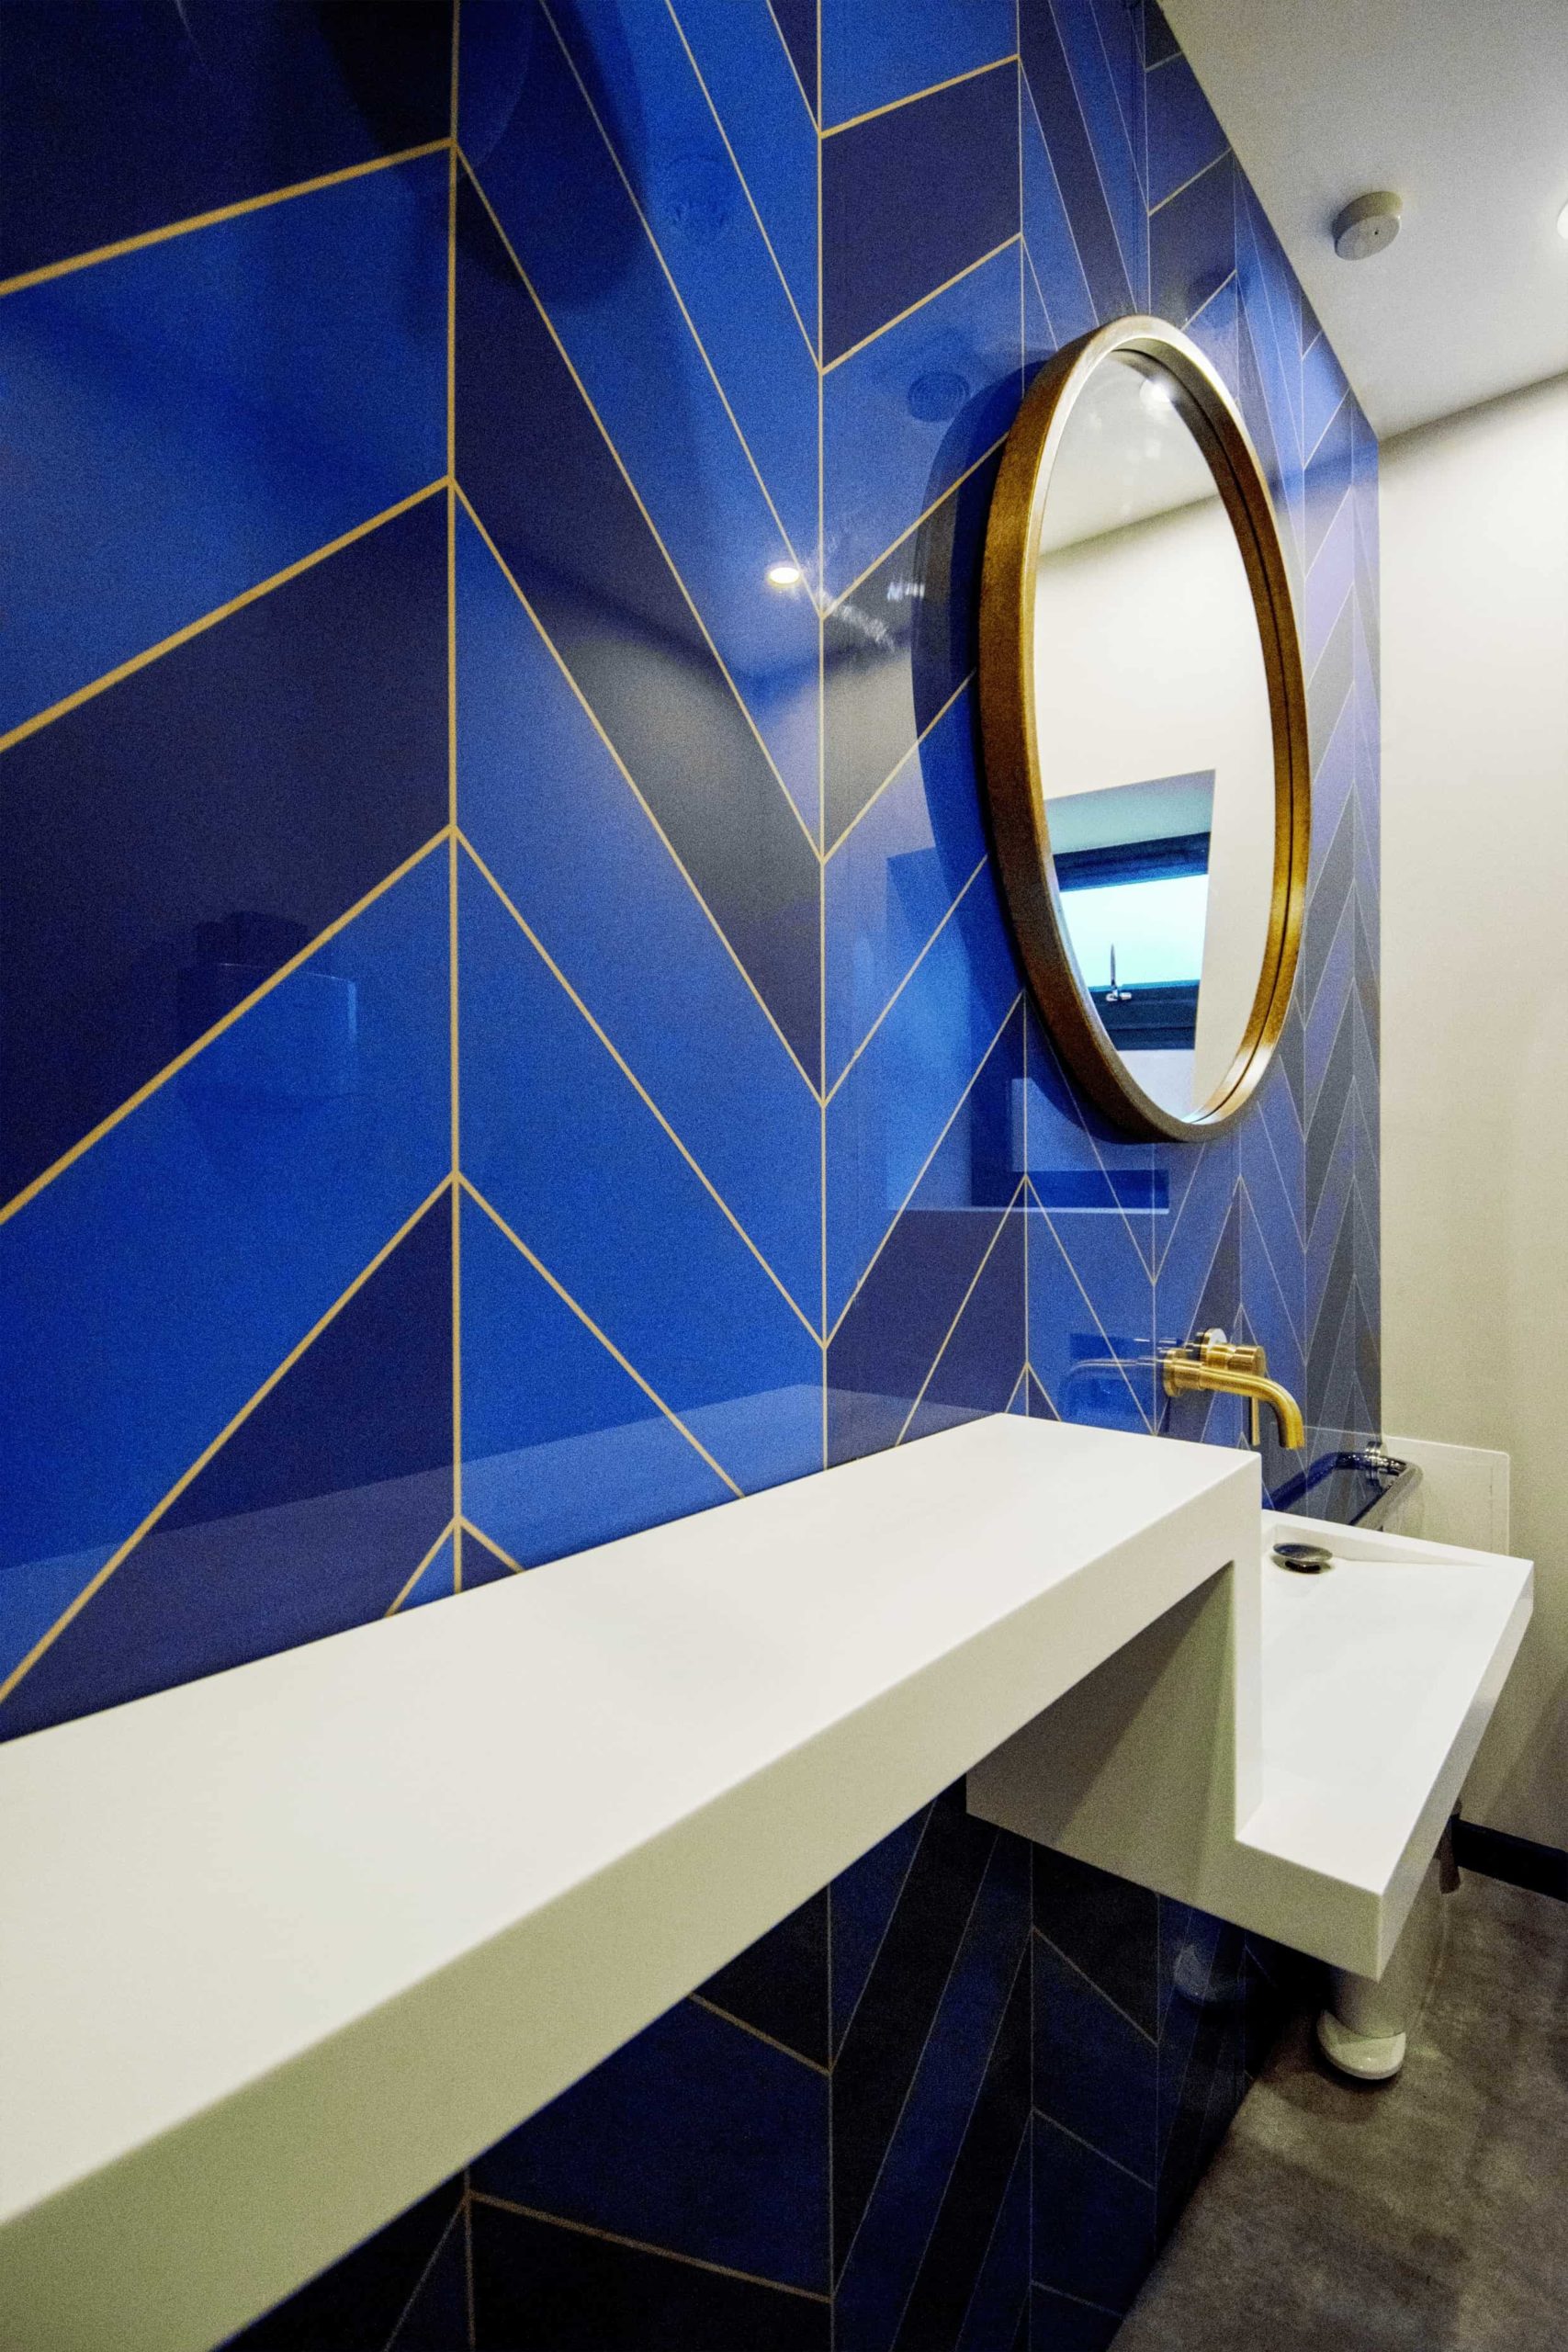 Bathroom wall cladded with custom blue tiles